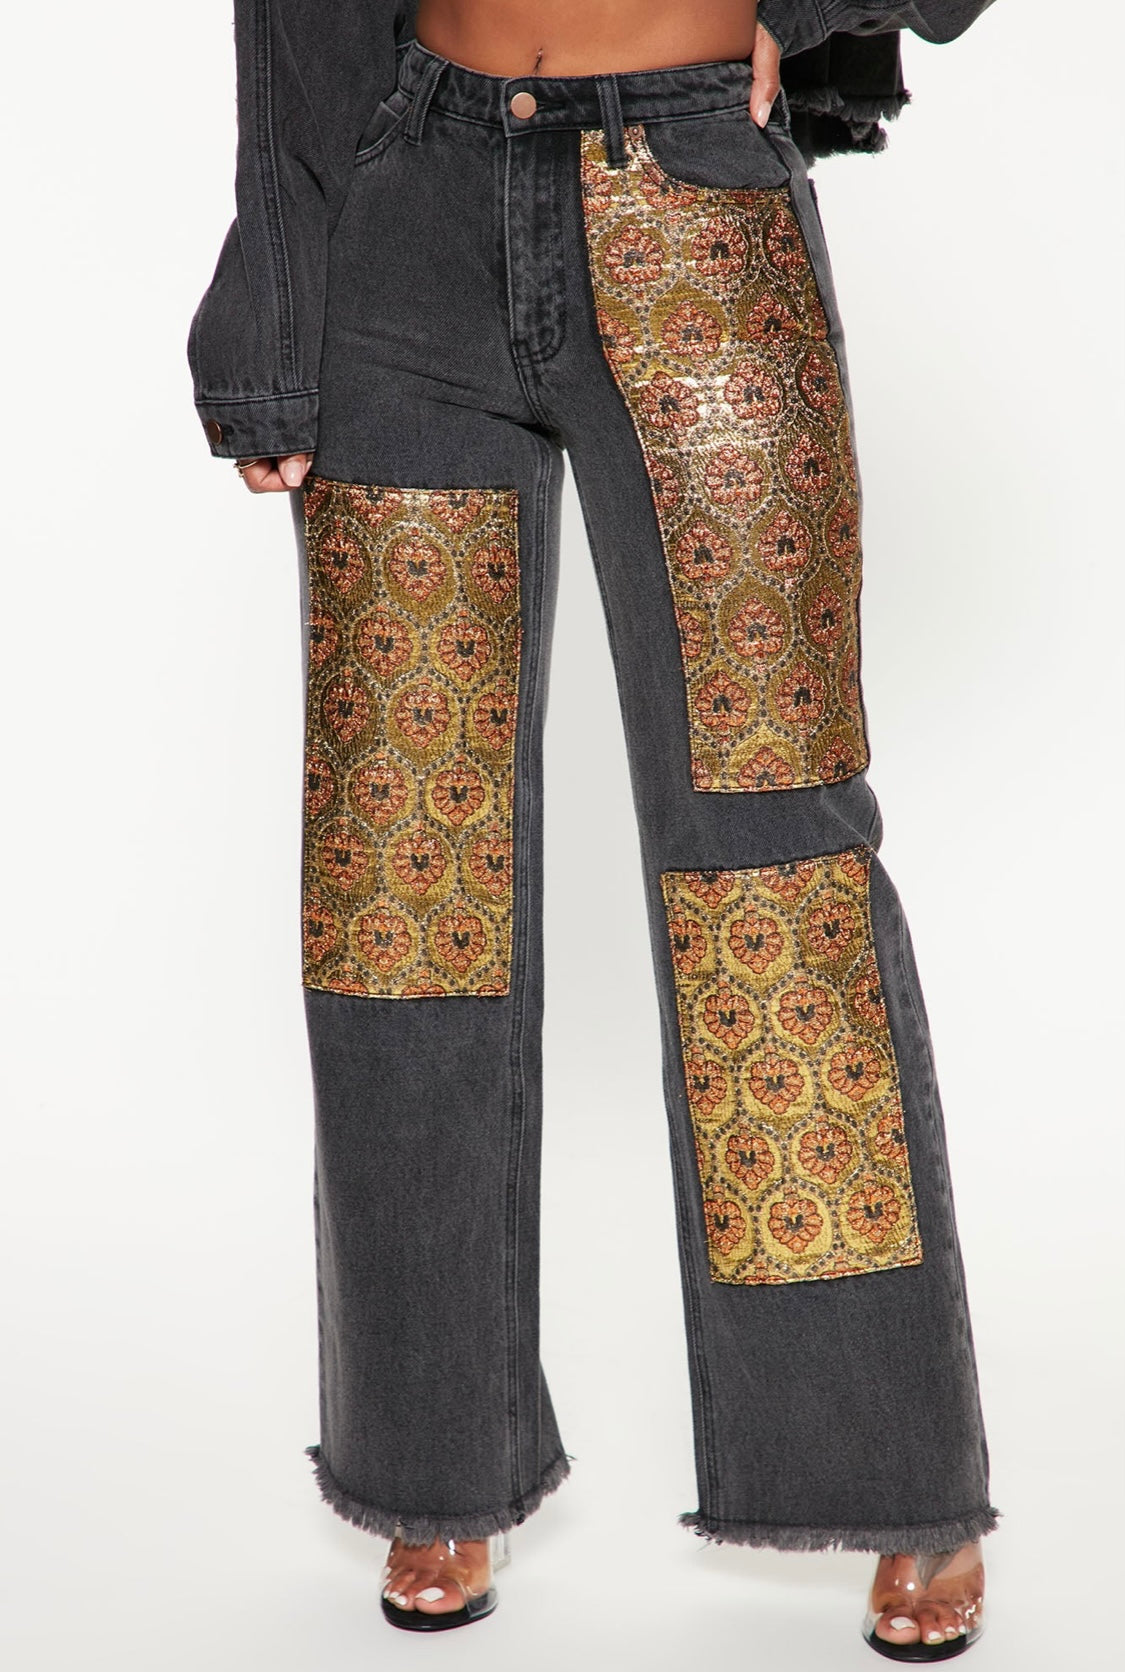 Pantalón jean Fashion Nova original color negro opaco, con diseño floral.